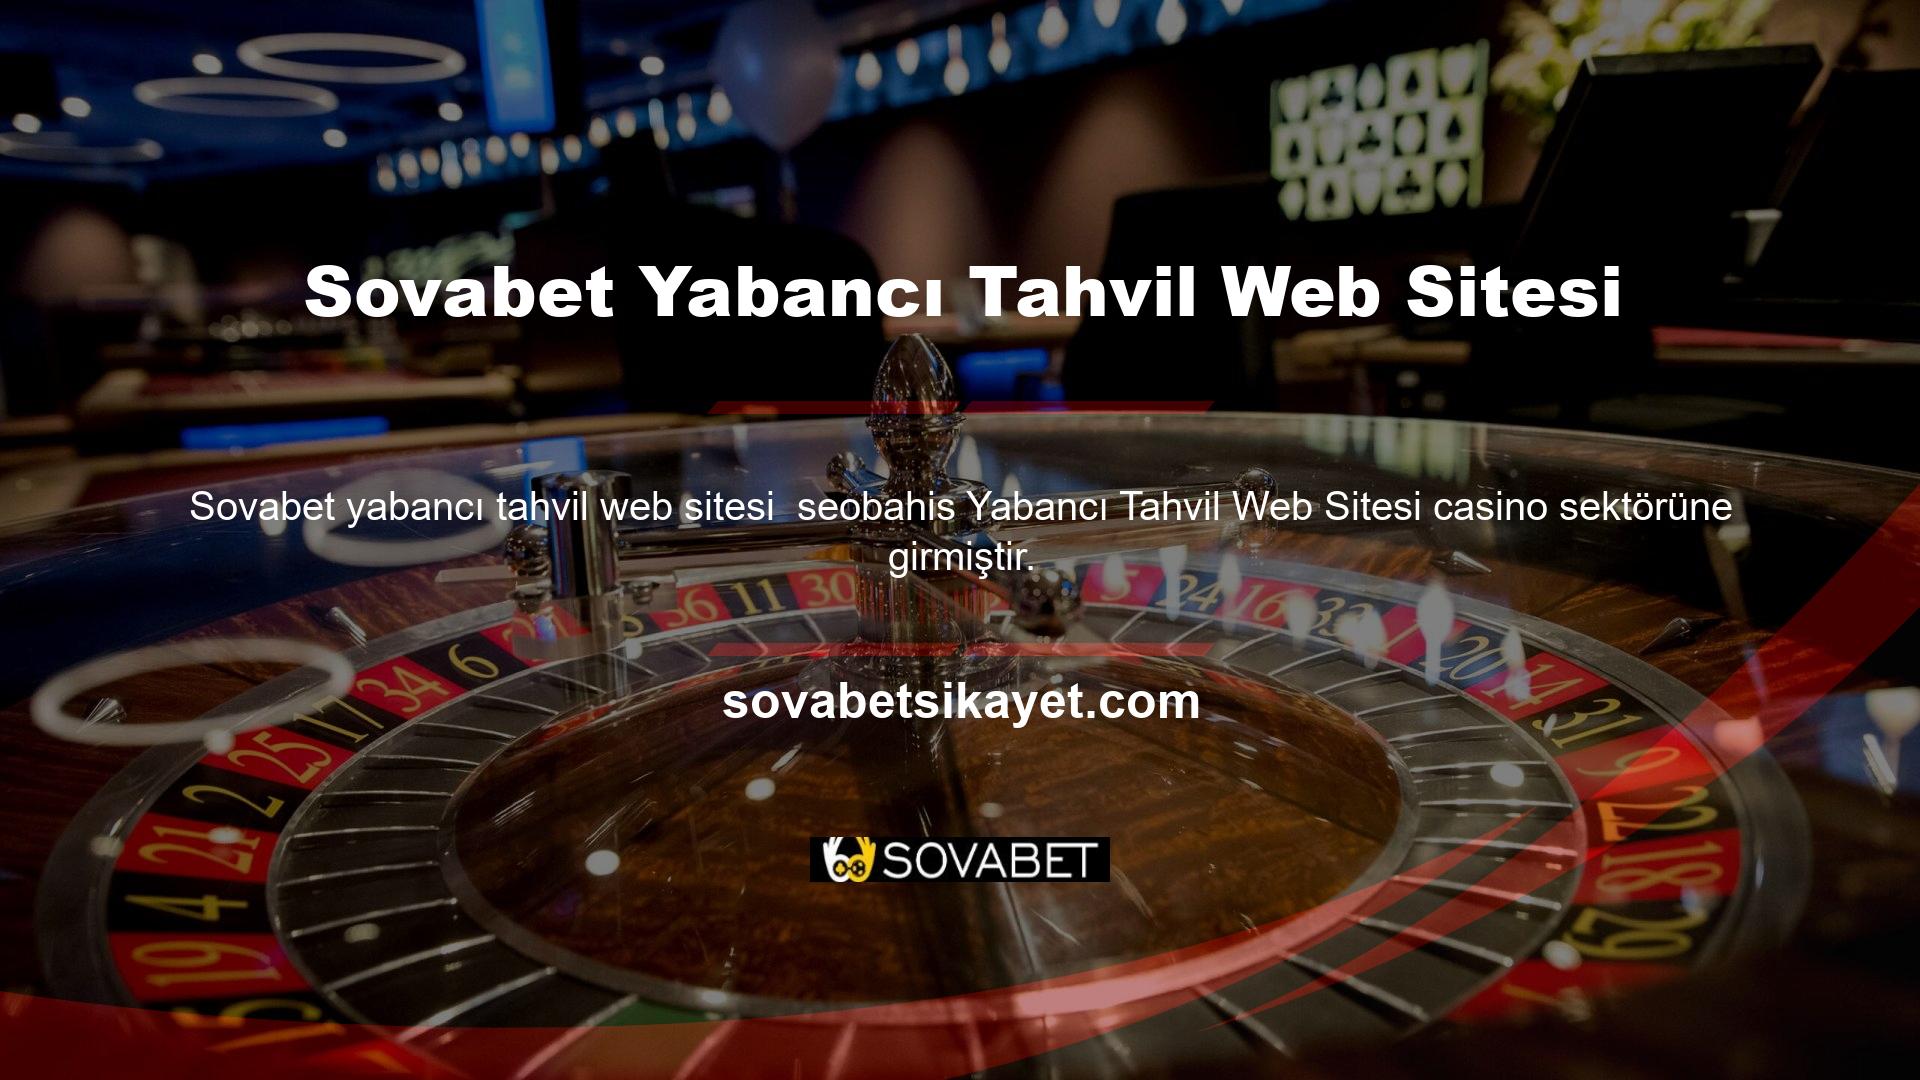 Deneyimli bir ekip tarafından oluşturulan Sovabet Yabancı Tahvil Web sitesi ve Sovabet markası hızla büyüyerek Türkiye'de dünyanın en çok kullanılan web sitelerinden biri haline geldi